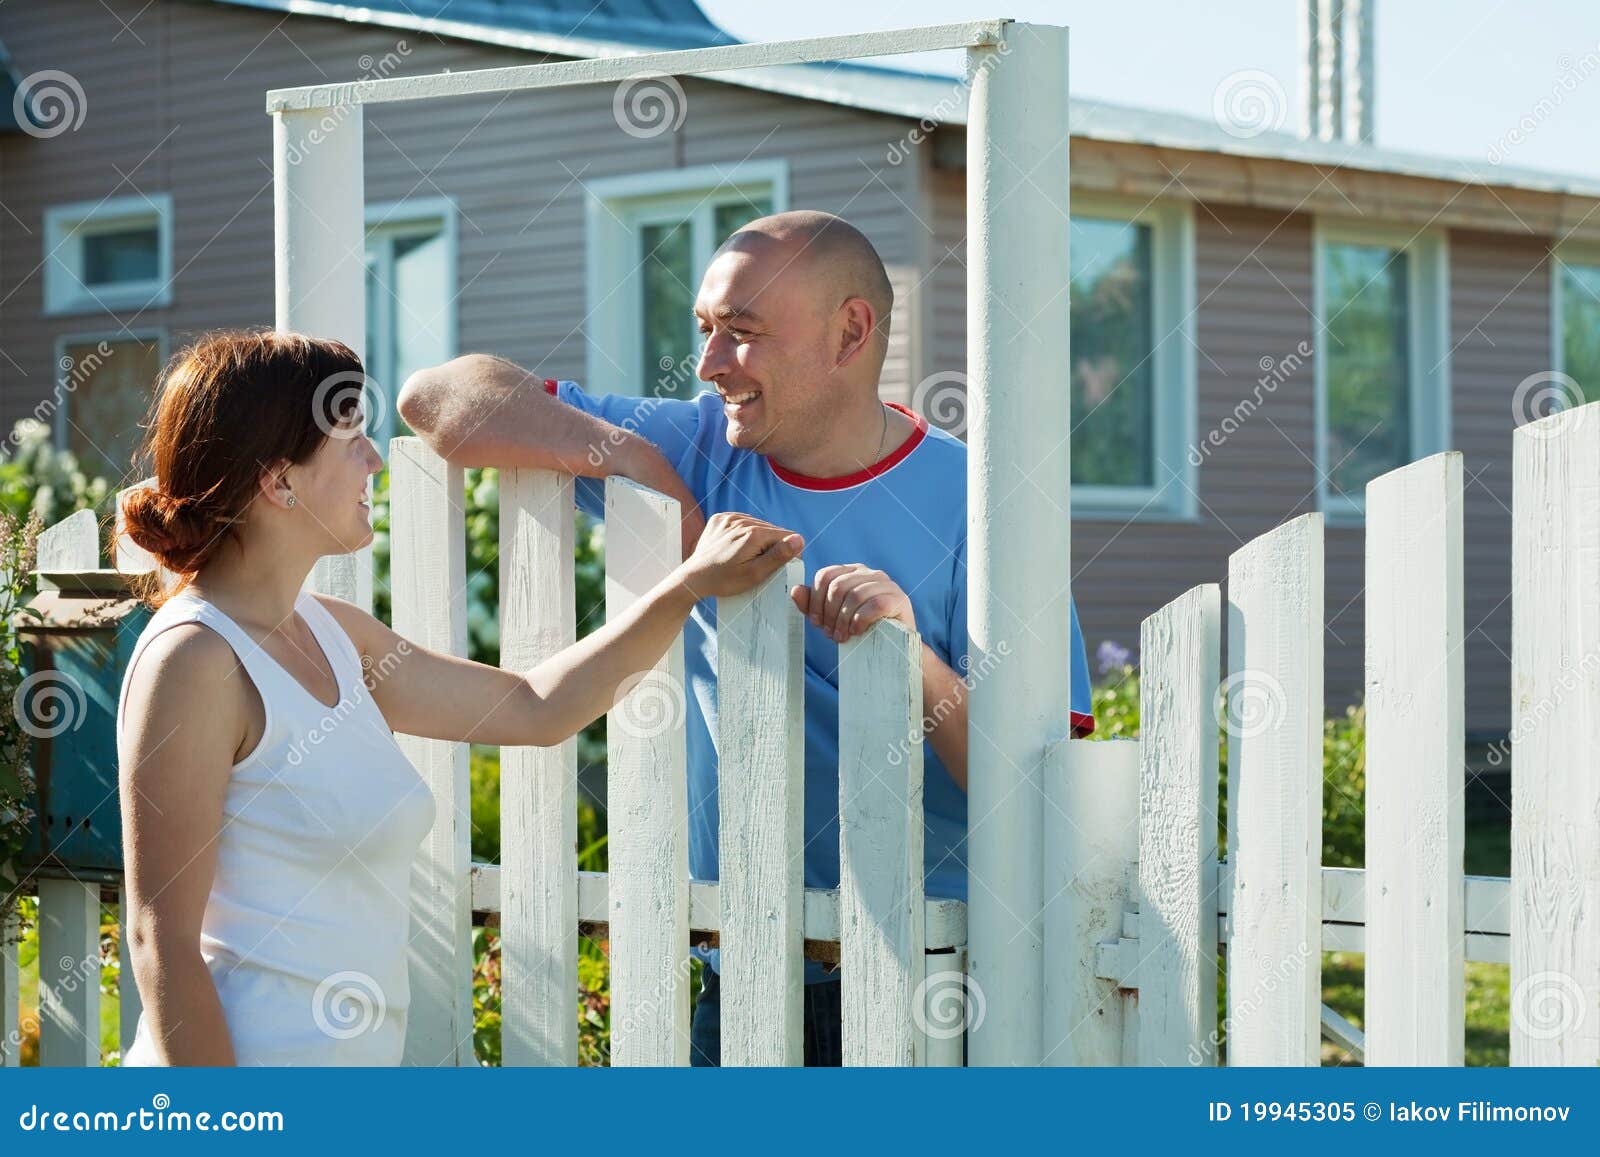 Мама и ее соседка. Человек у забора. Человек около забора. Забор дружные соседи. Соседи по дому.